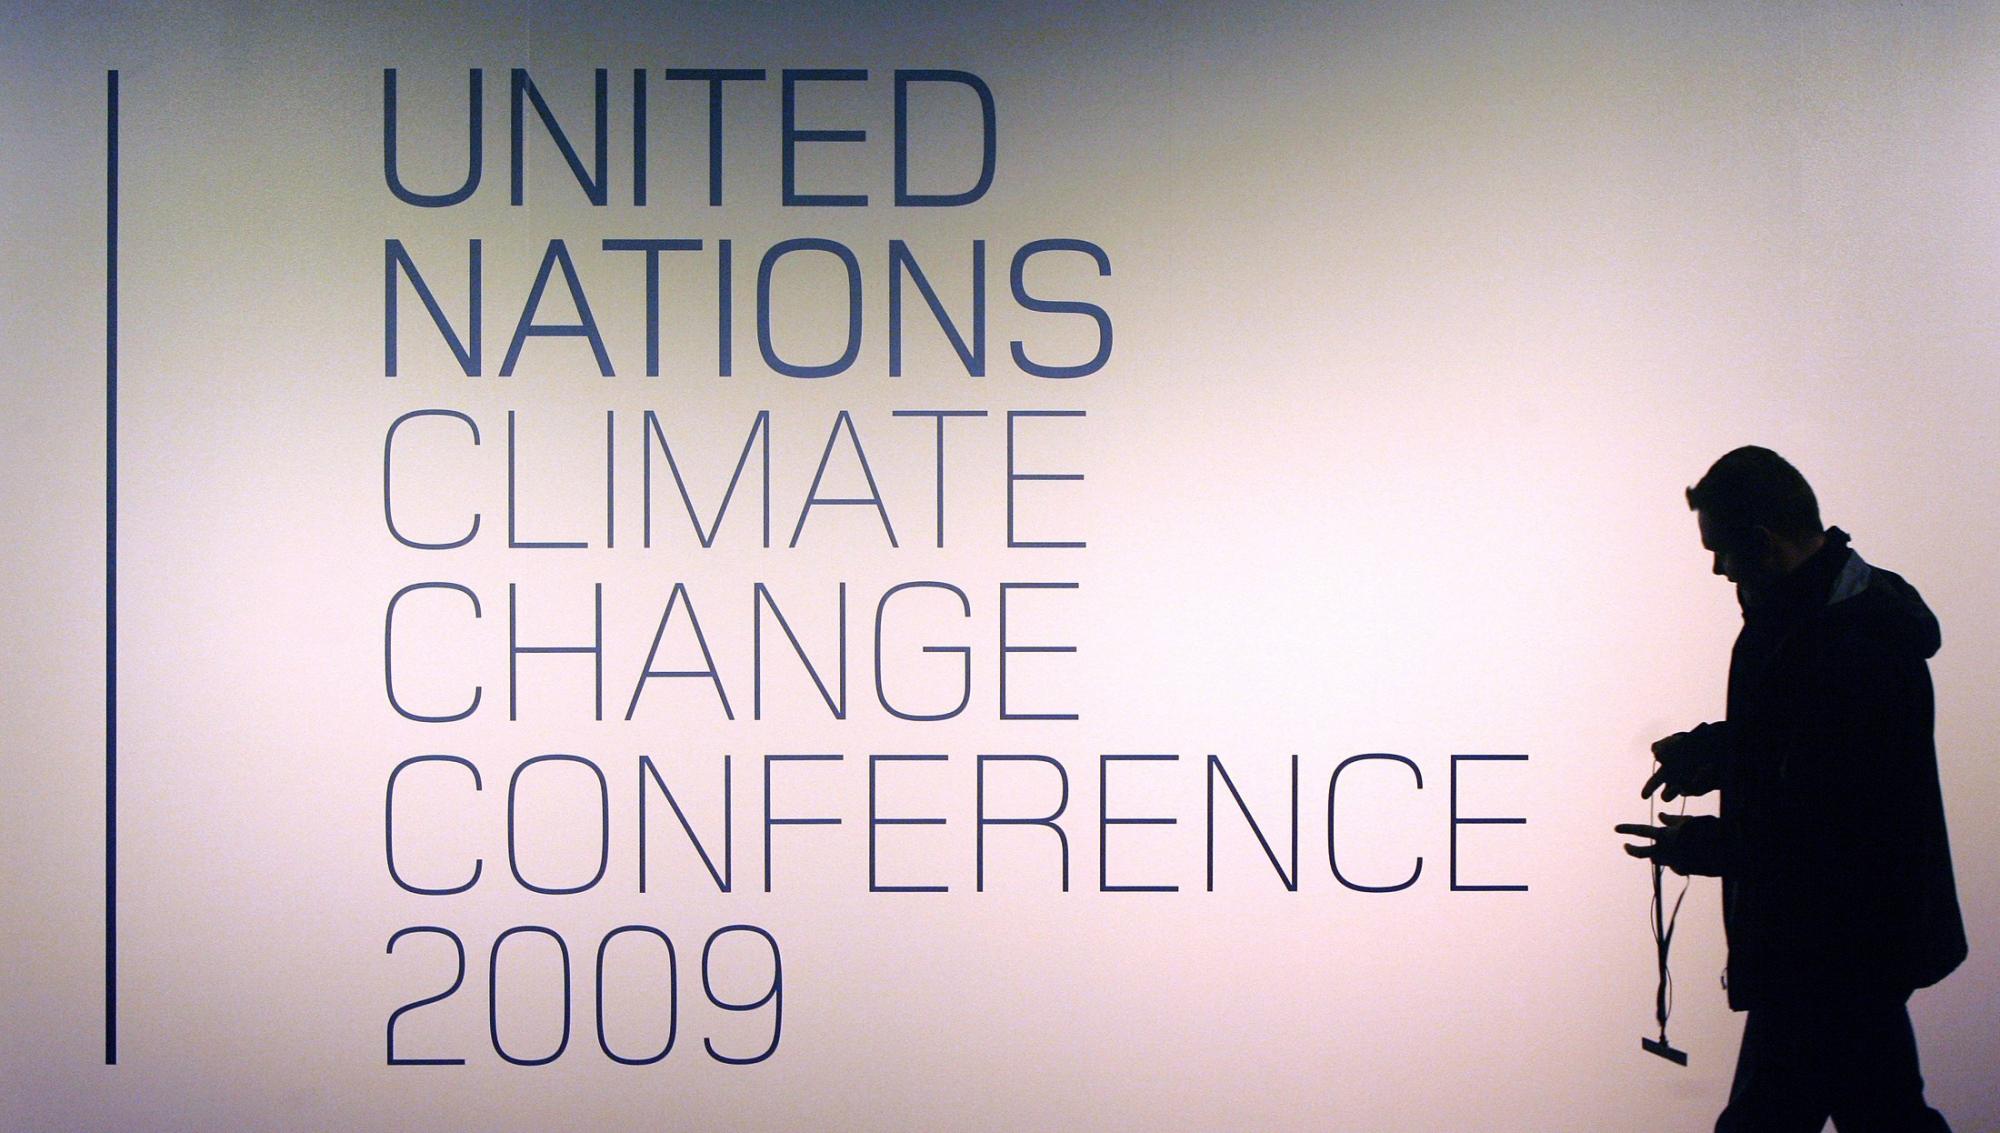 UN Climate Change Conference 2009 to kick off Dec. 7